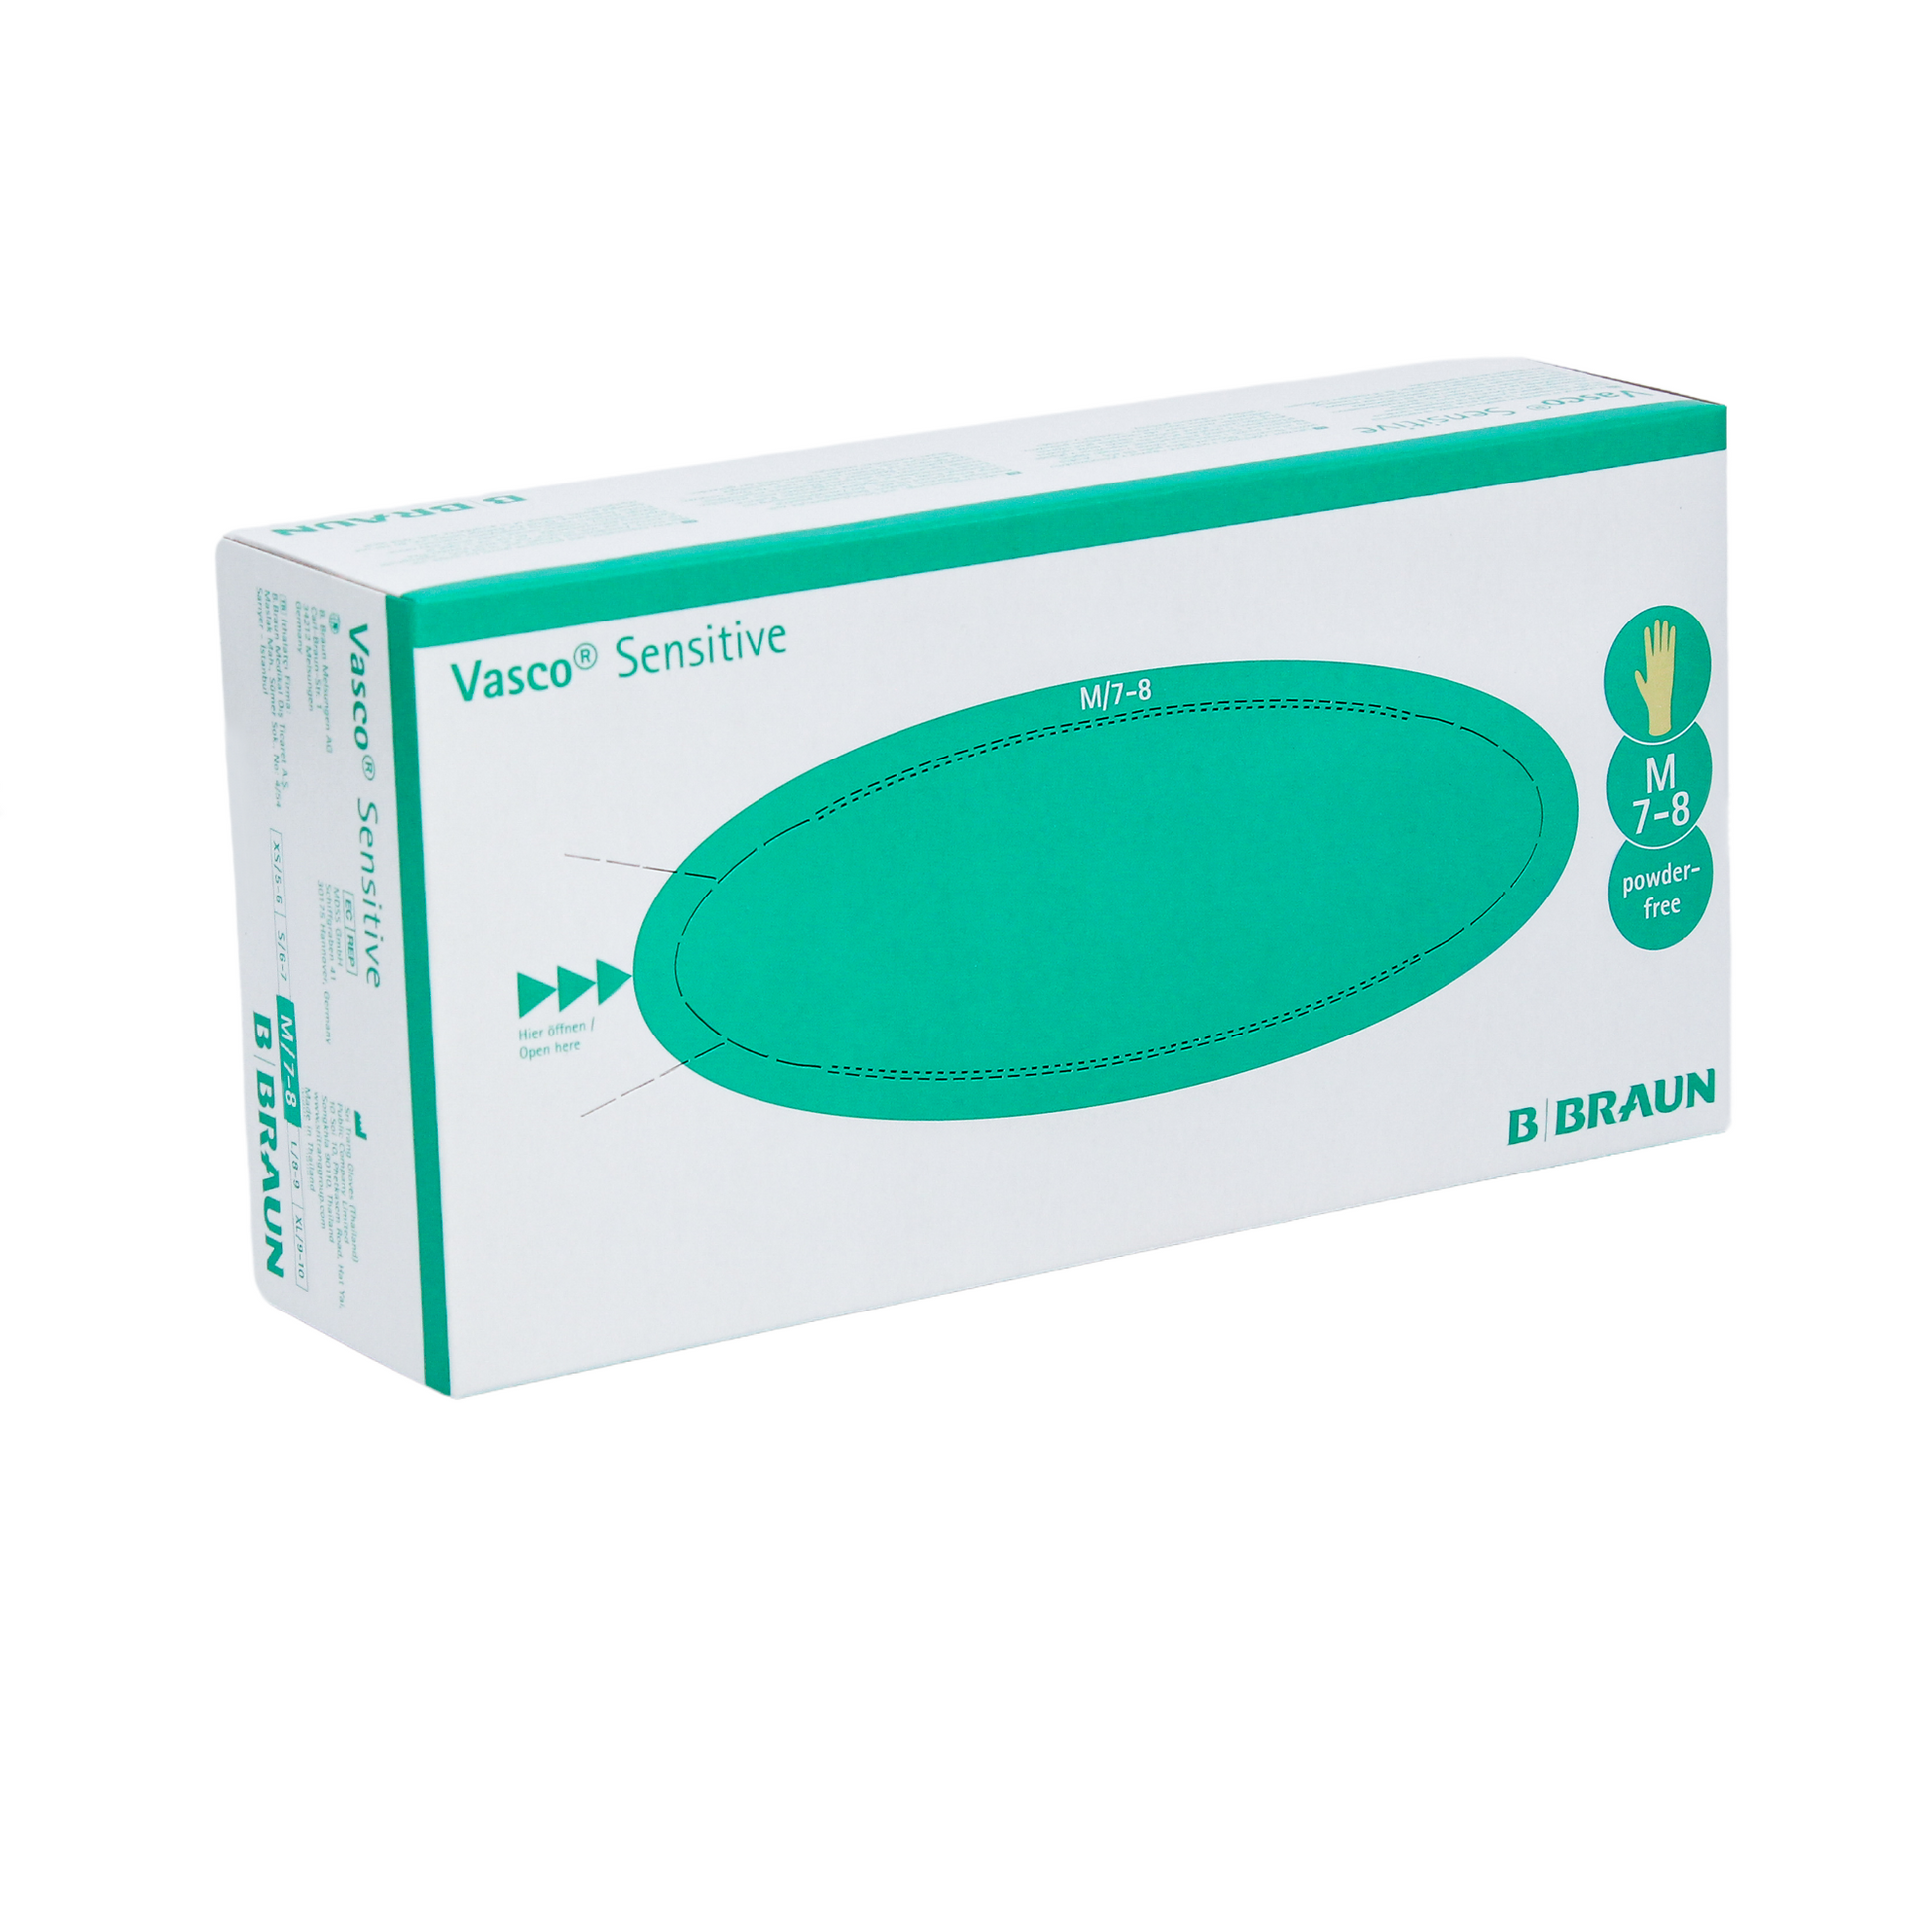 Eine Schachtel B. Braun Vasco® Sensitive Latex-Untersuchungshandschuhe von B. Braun Melsungen AG auf weißem Hintergrund. Die Verpackung ist überwiegend weiß mit grünen Akzenten und Text.